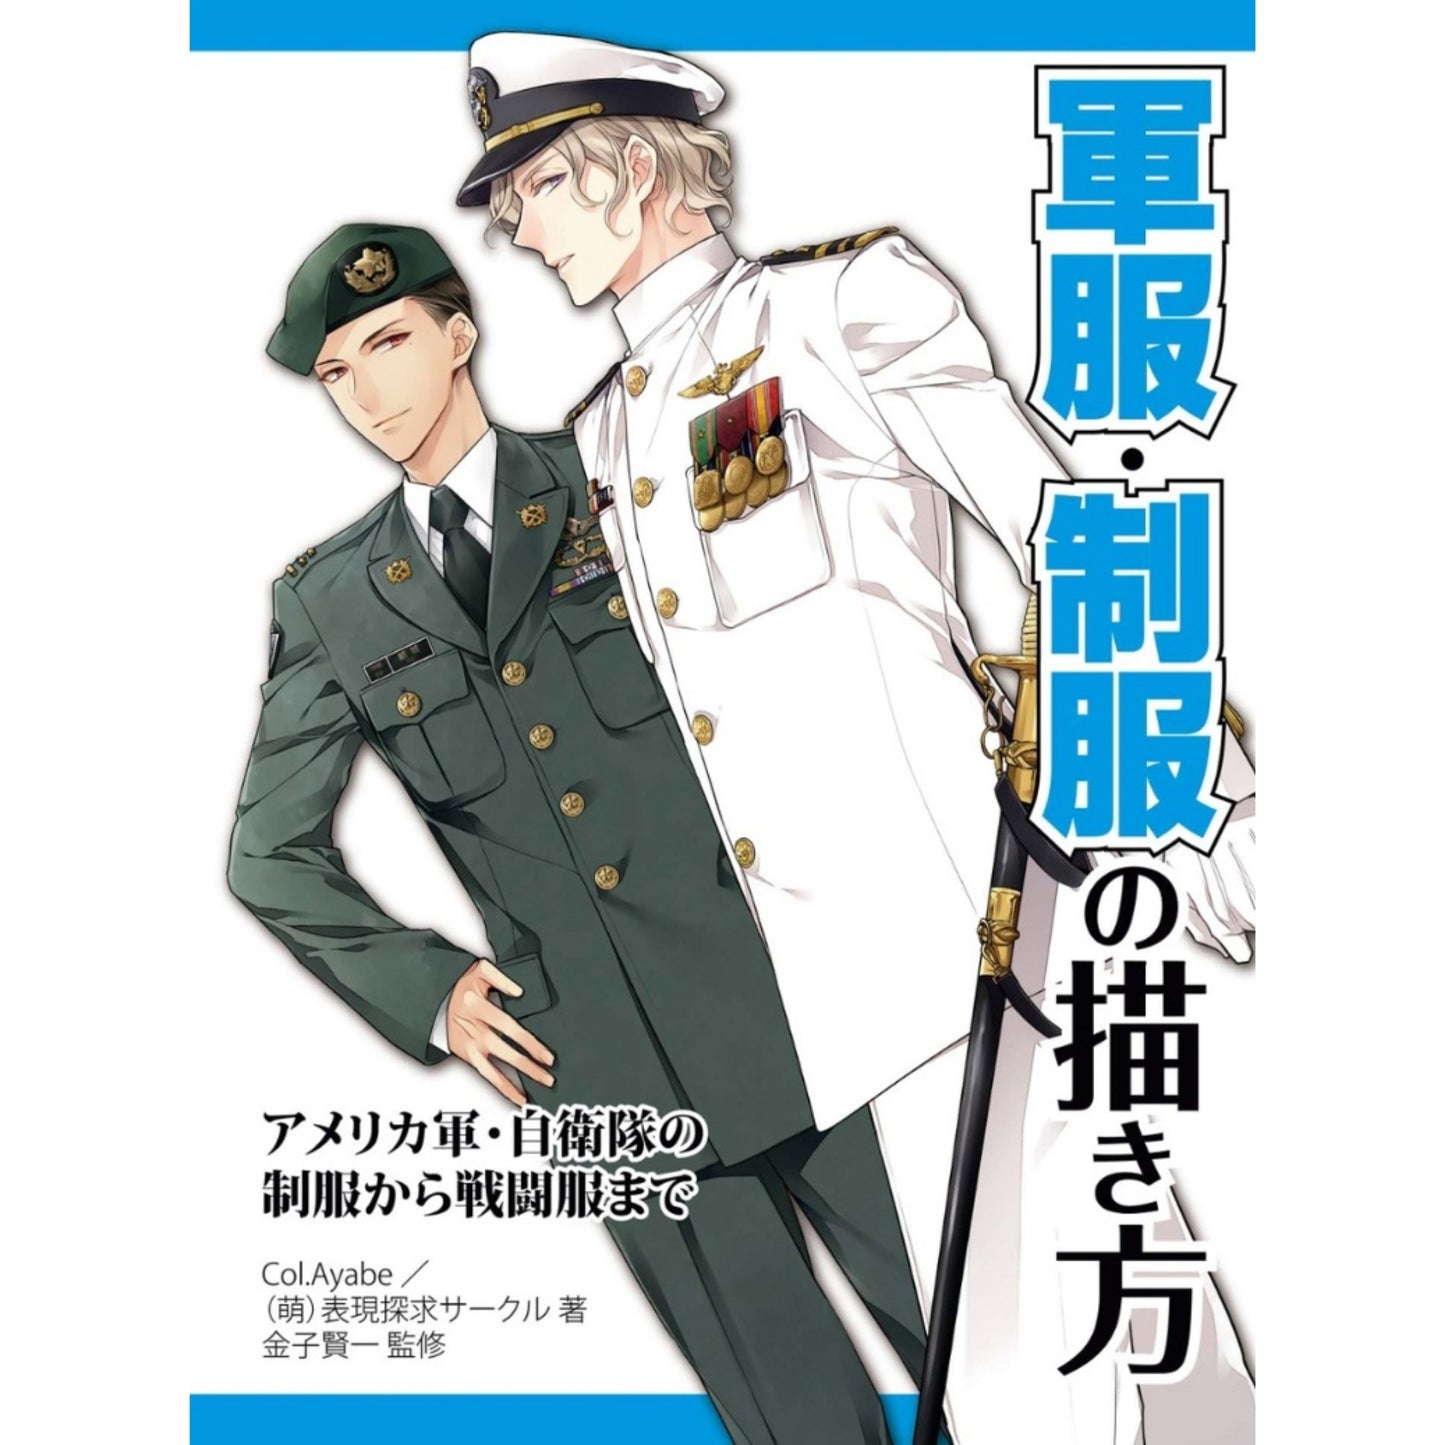 How to draw - jap. Zeichenbuch -  Uniformen US Army, ASDF, JSDF